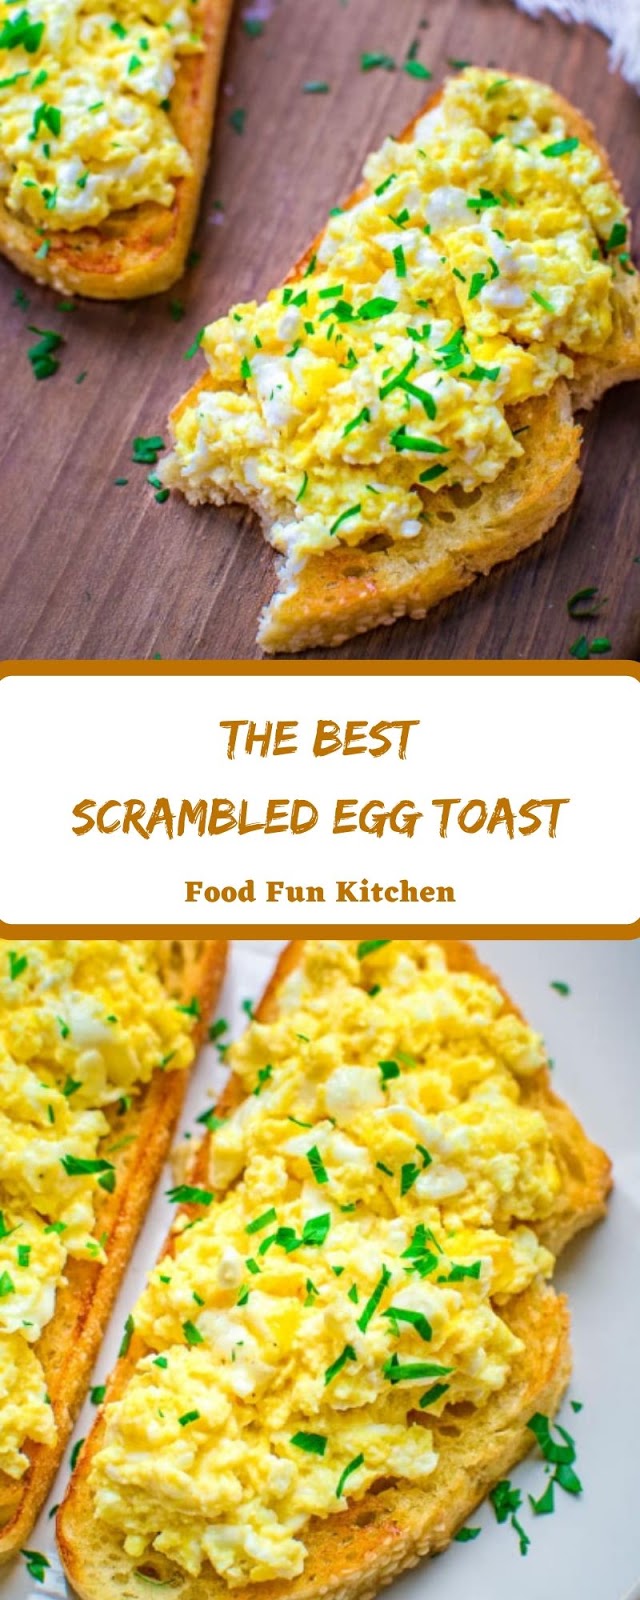 The Best Scrambled Egg Toast